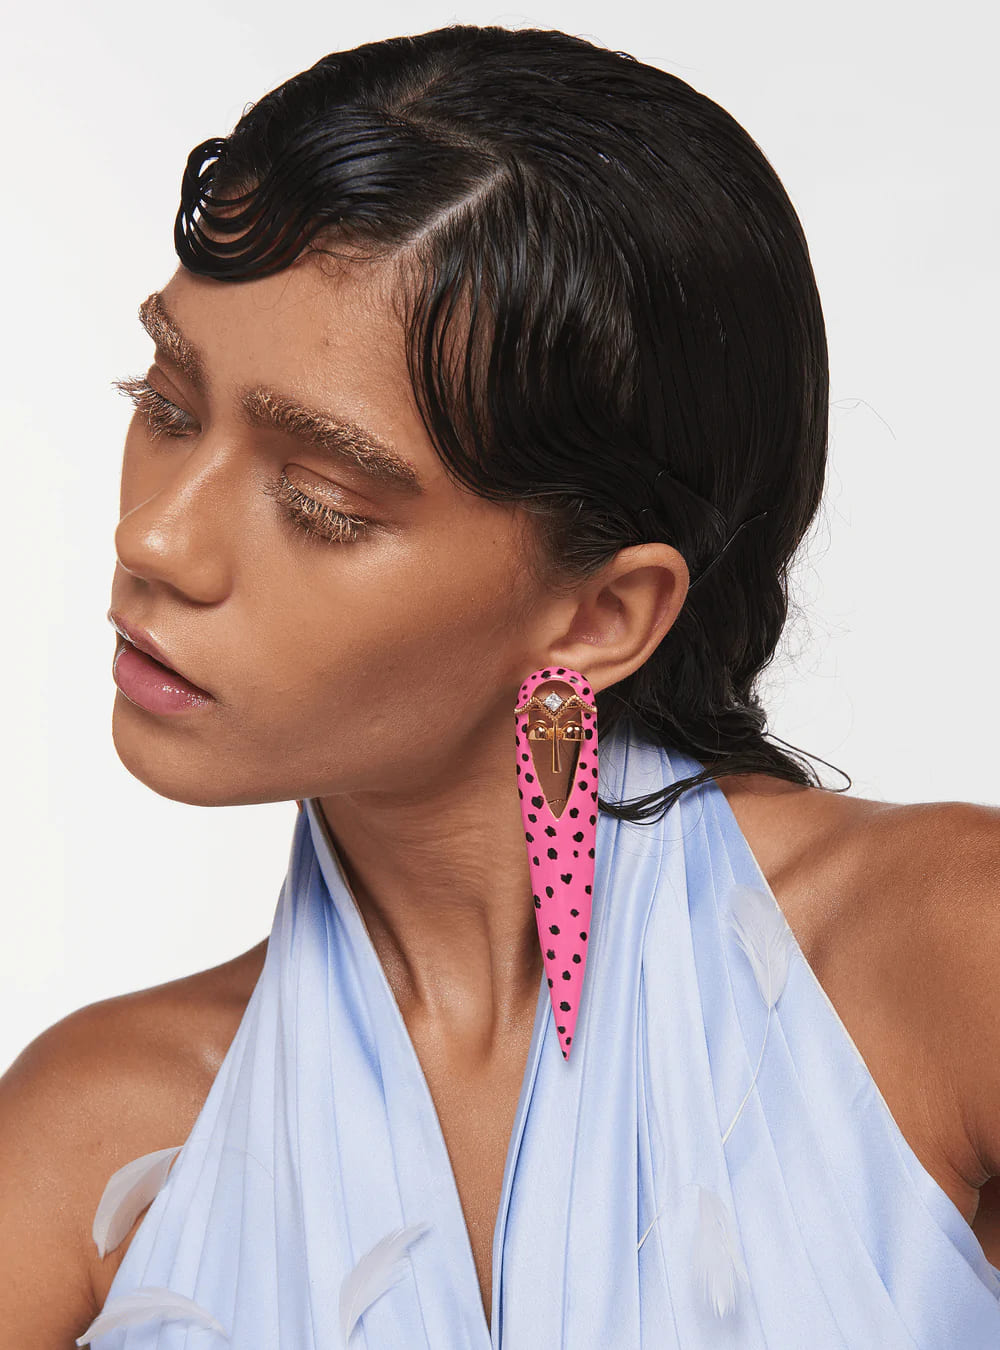 pink enamel earrings